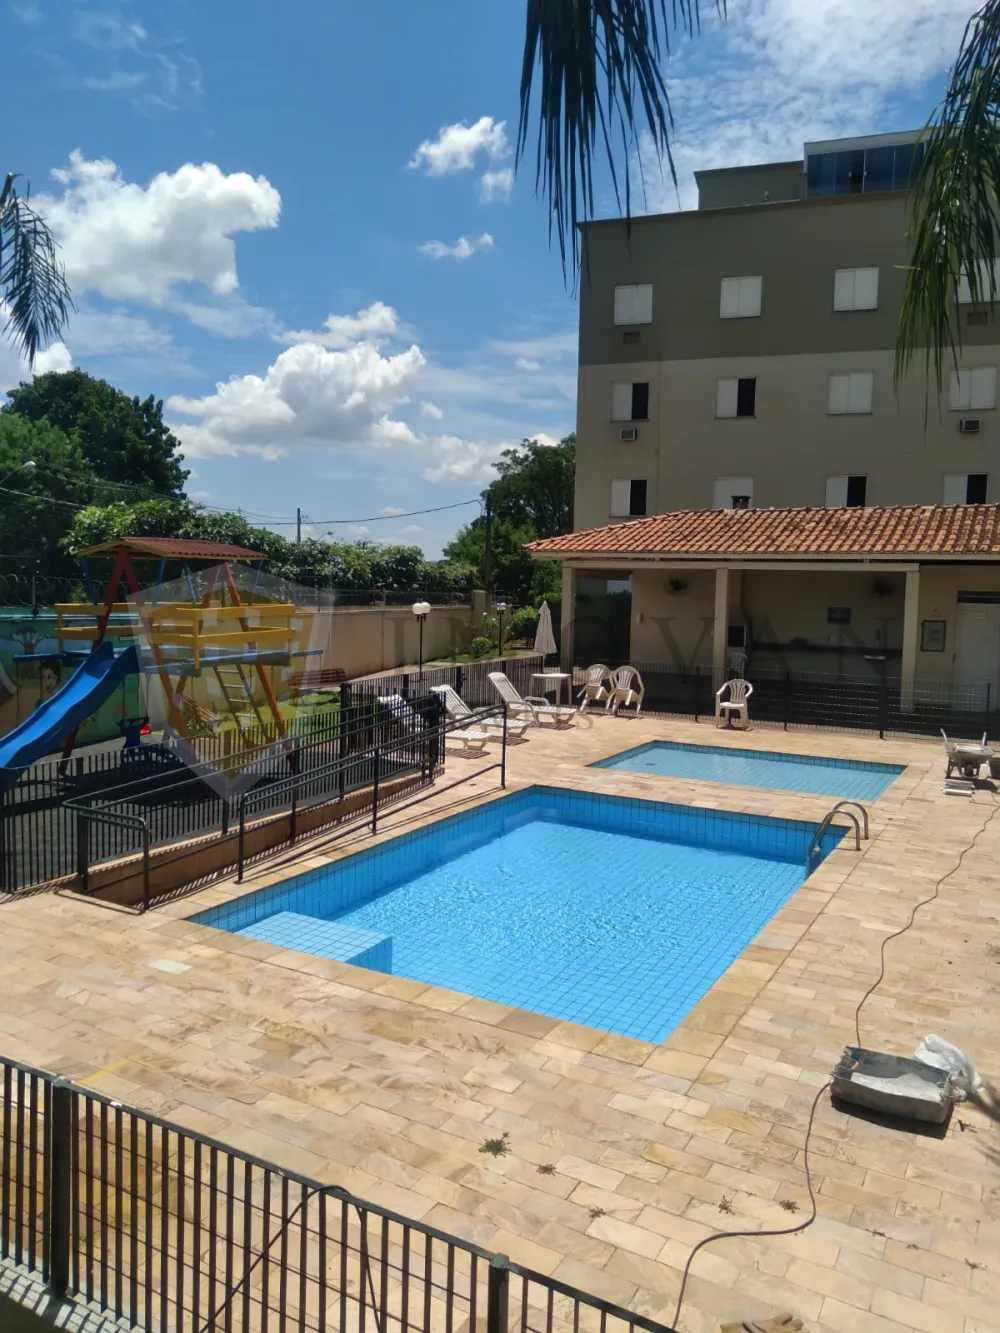 Alugar Apartamento / Padrão em Ribeirão Preto R$ 950,00 - Foto 19